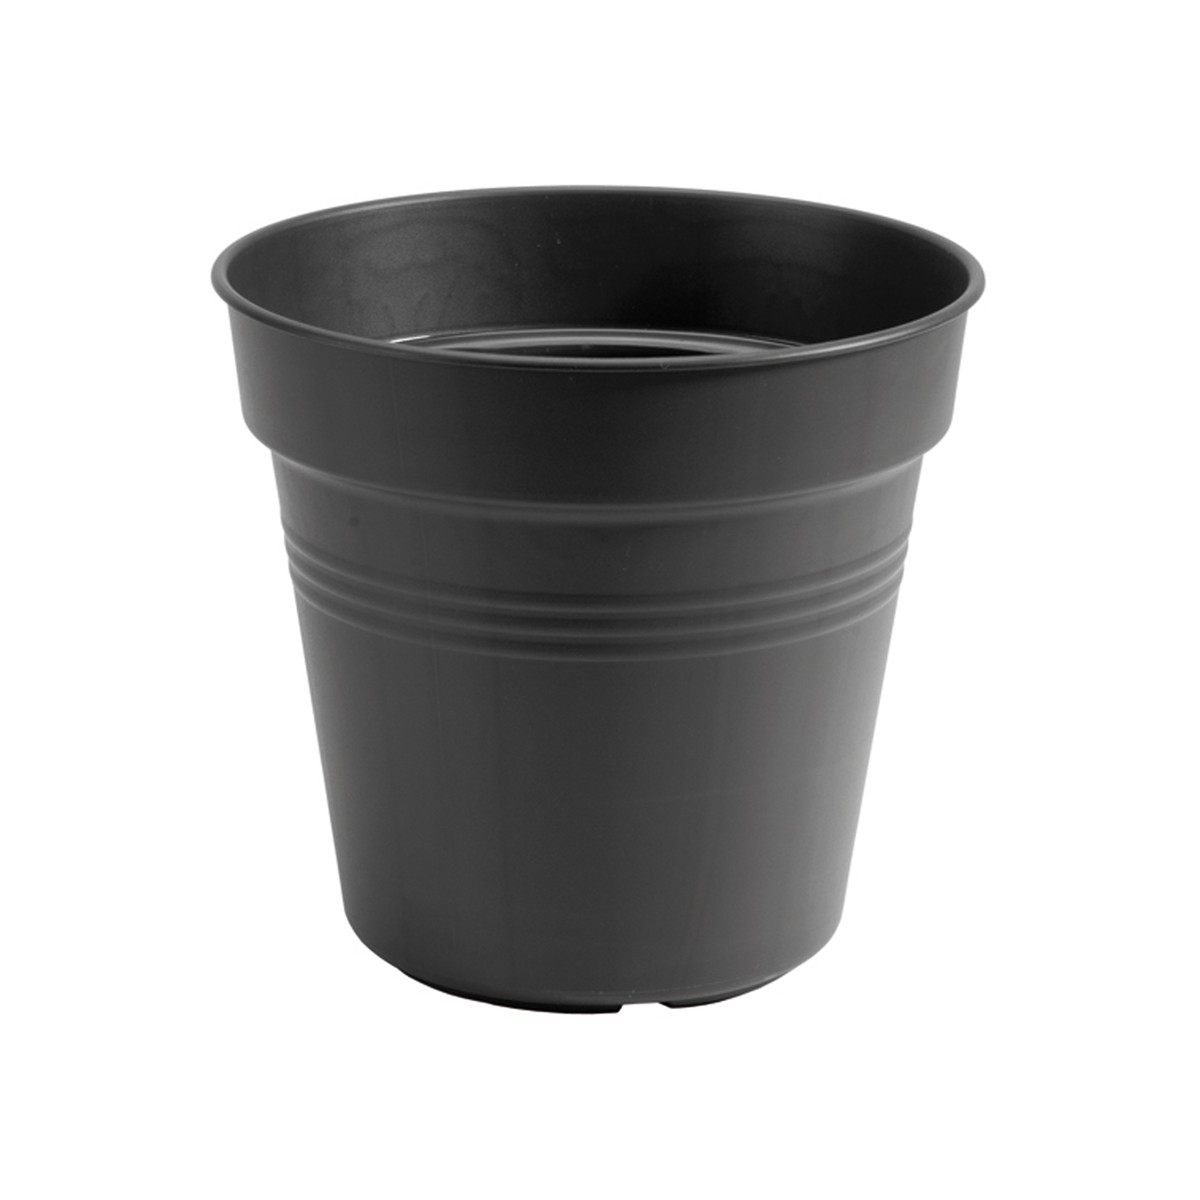 Elho  green basics pot de culture 17cm Noir 17x15.6cm 2.1L